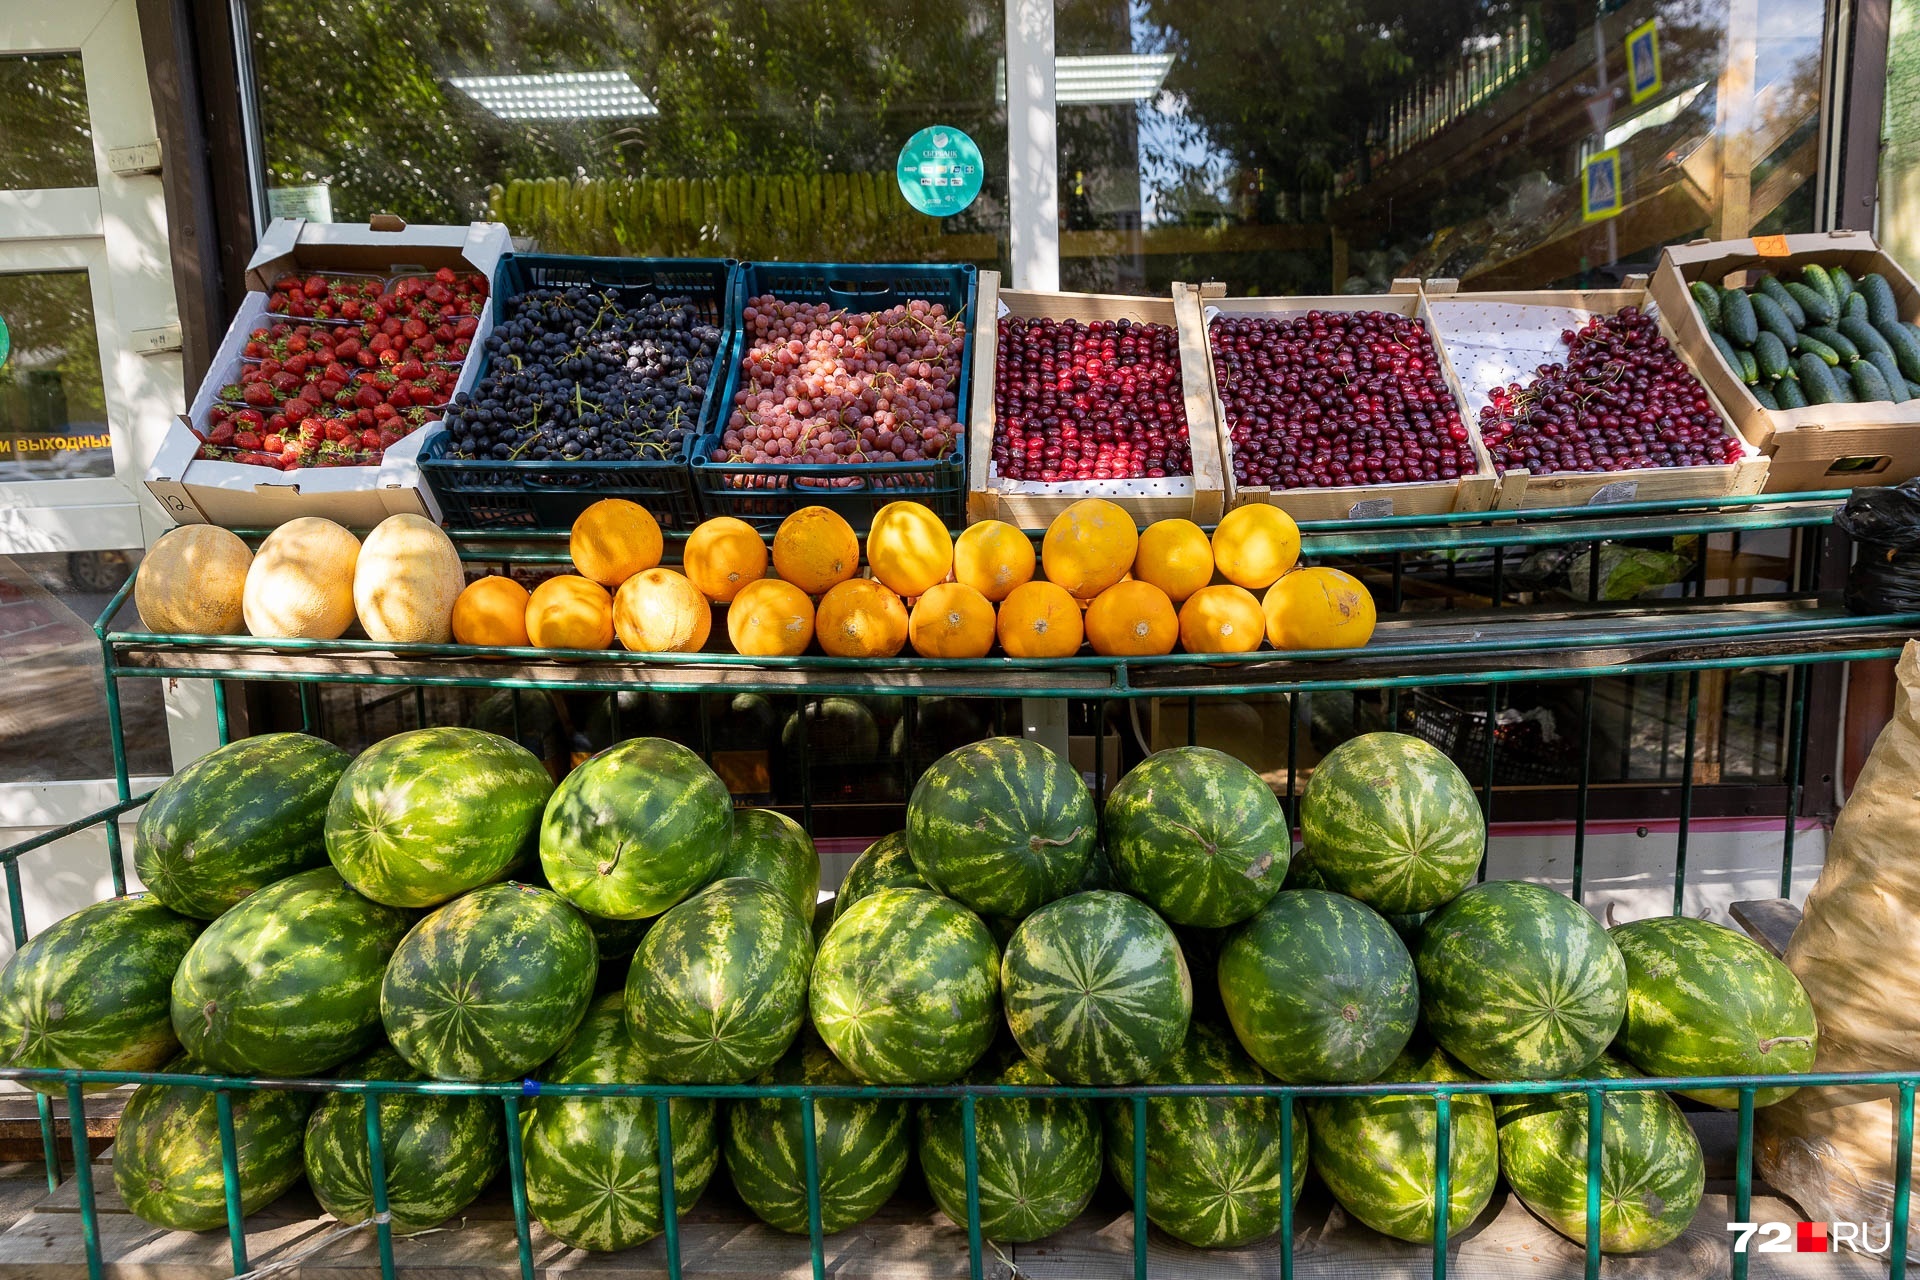 Добавим, что здесь же продают ягоды: узбекистанскую черешню — от 590 до 650 рублей за кило, клубнику — за 550 рублей